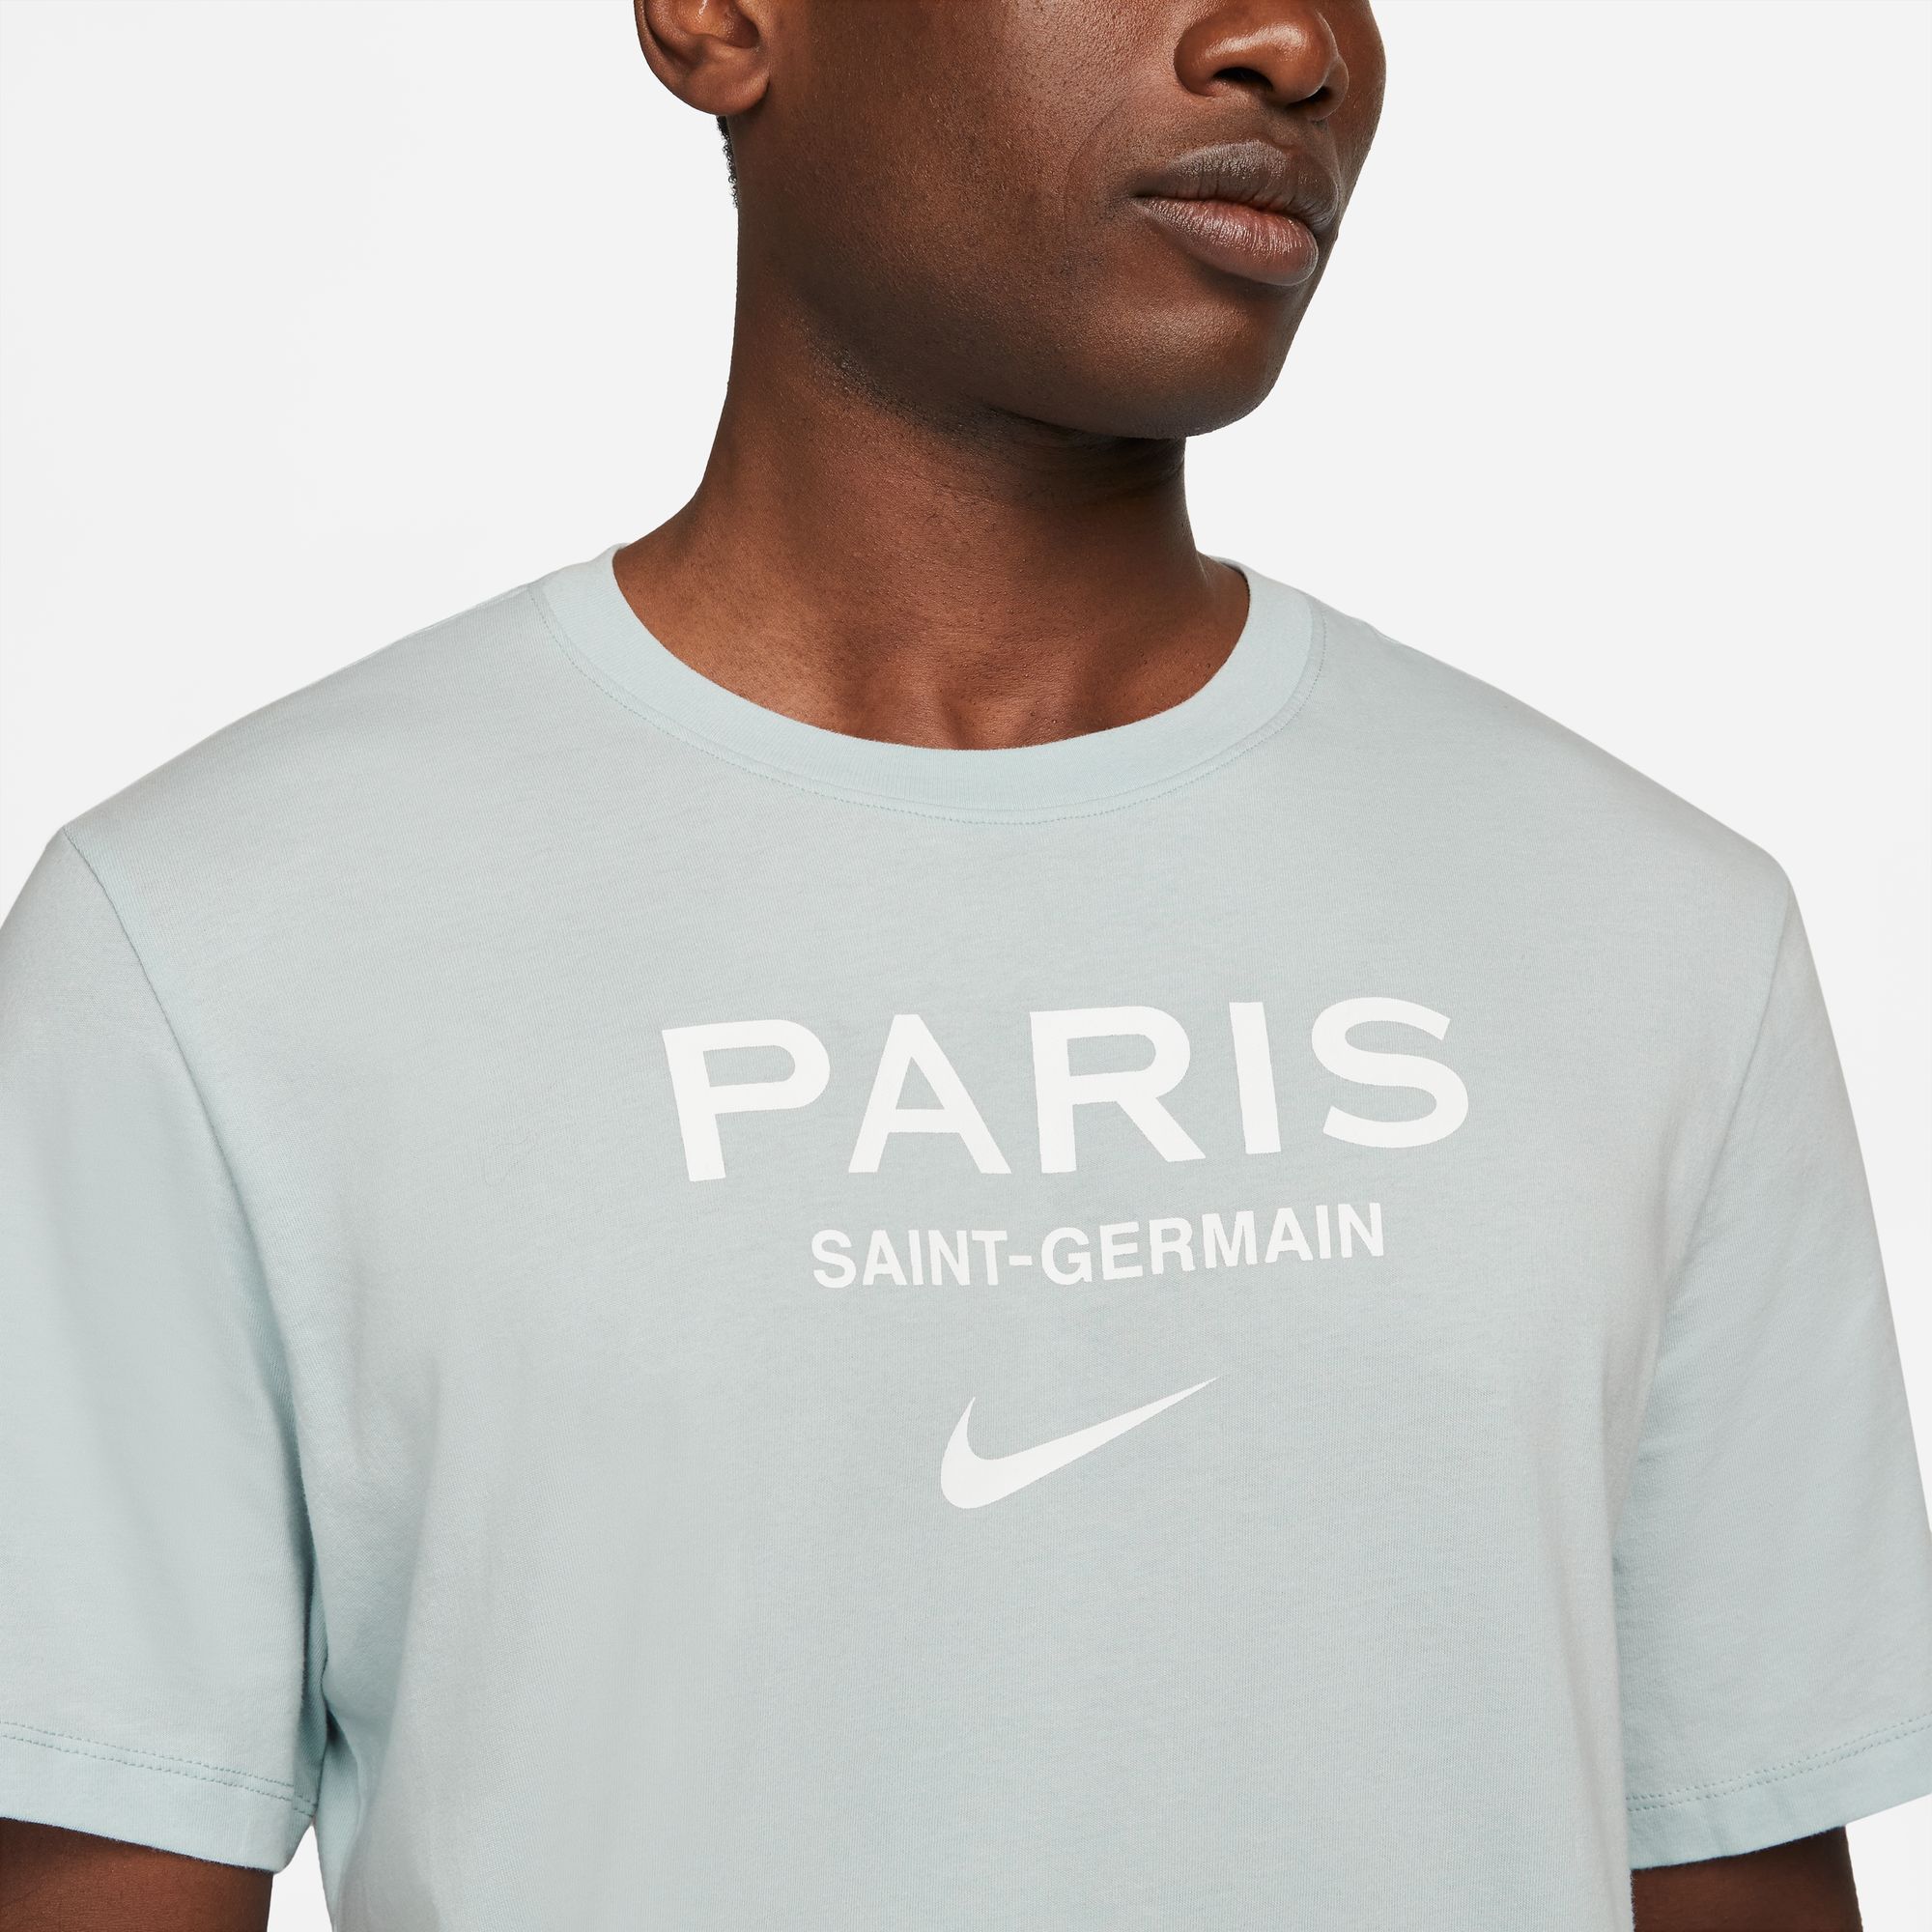 Paris Saint Germain – RetrokitStar